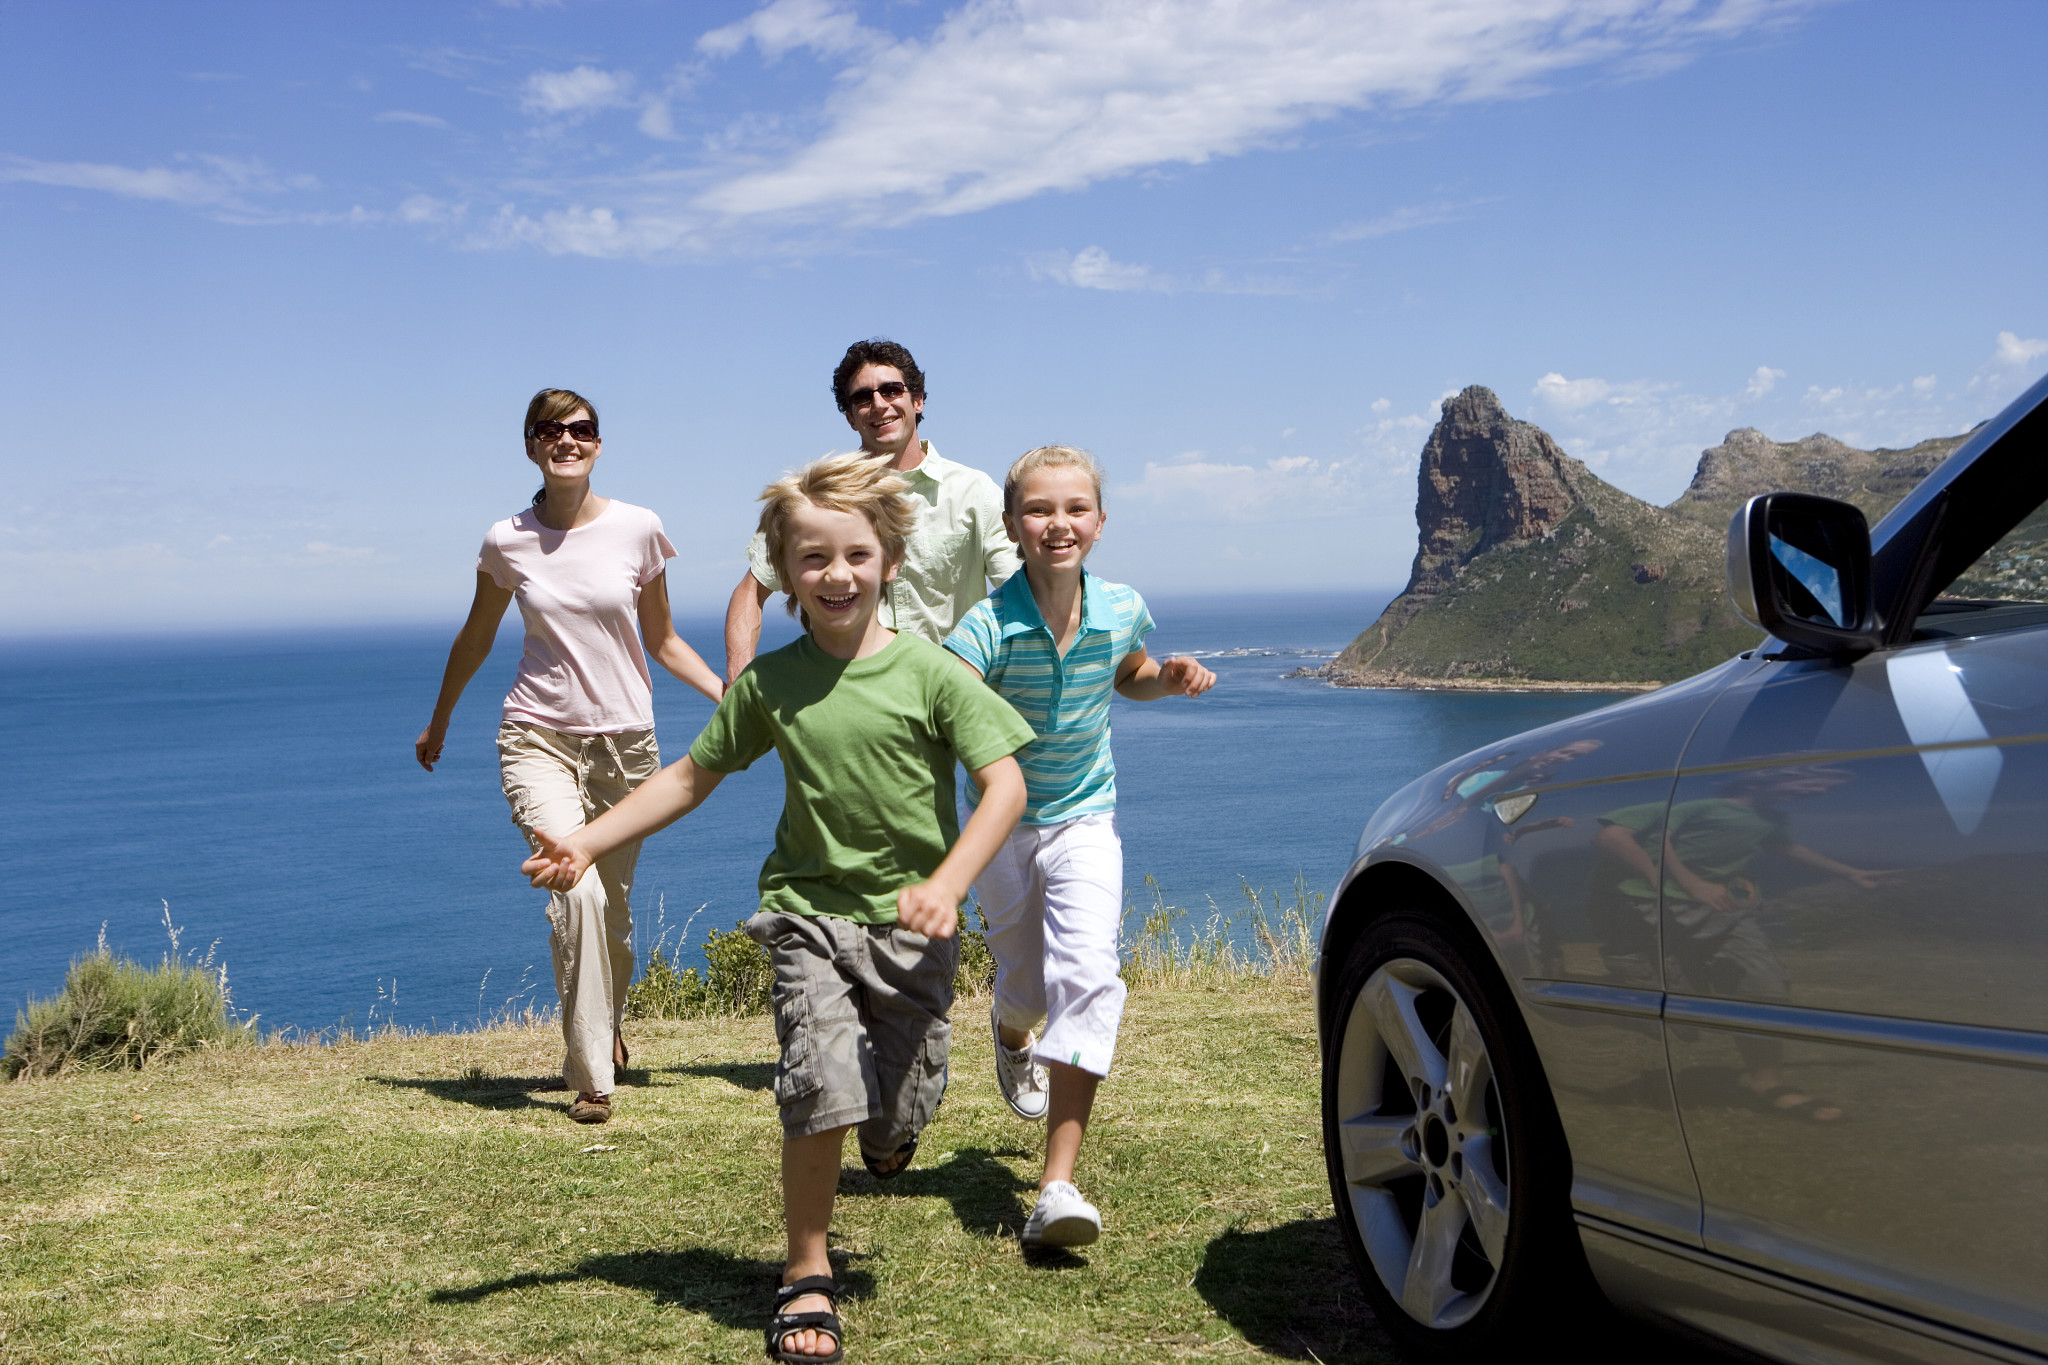 На море с детьми на машине. Путешествие с семьей. Семья путешествует. Семейная машина для путешествий. Путешествие на море с семьей.